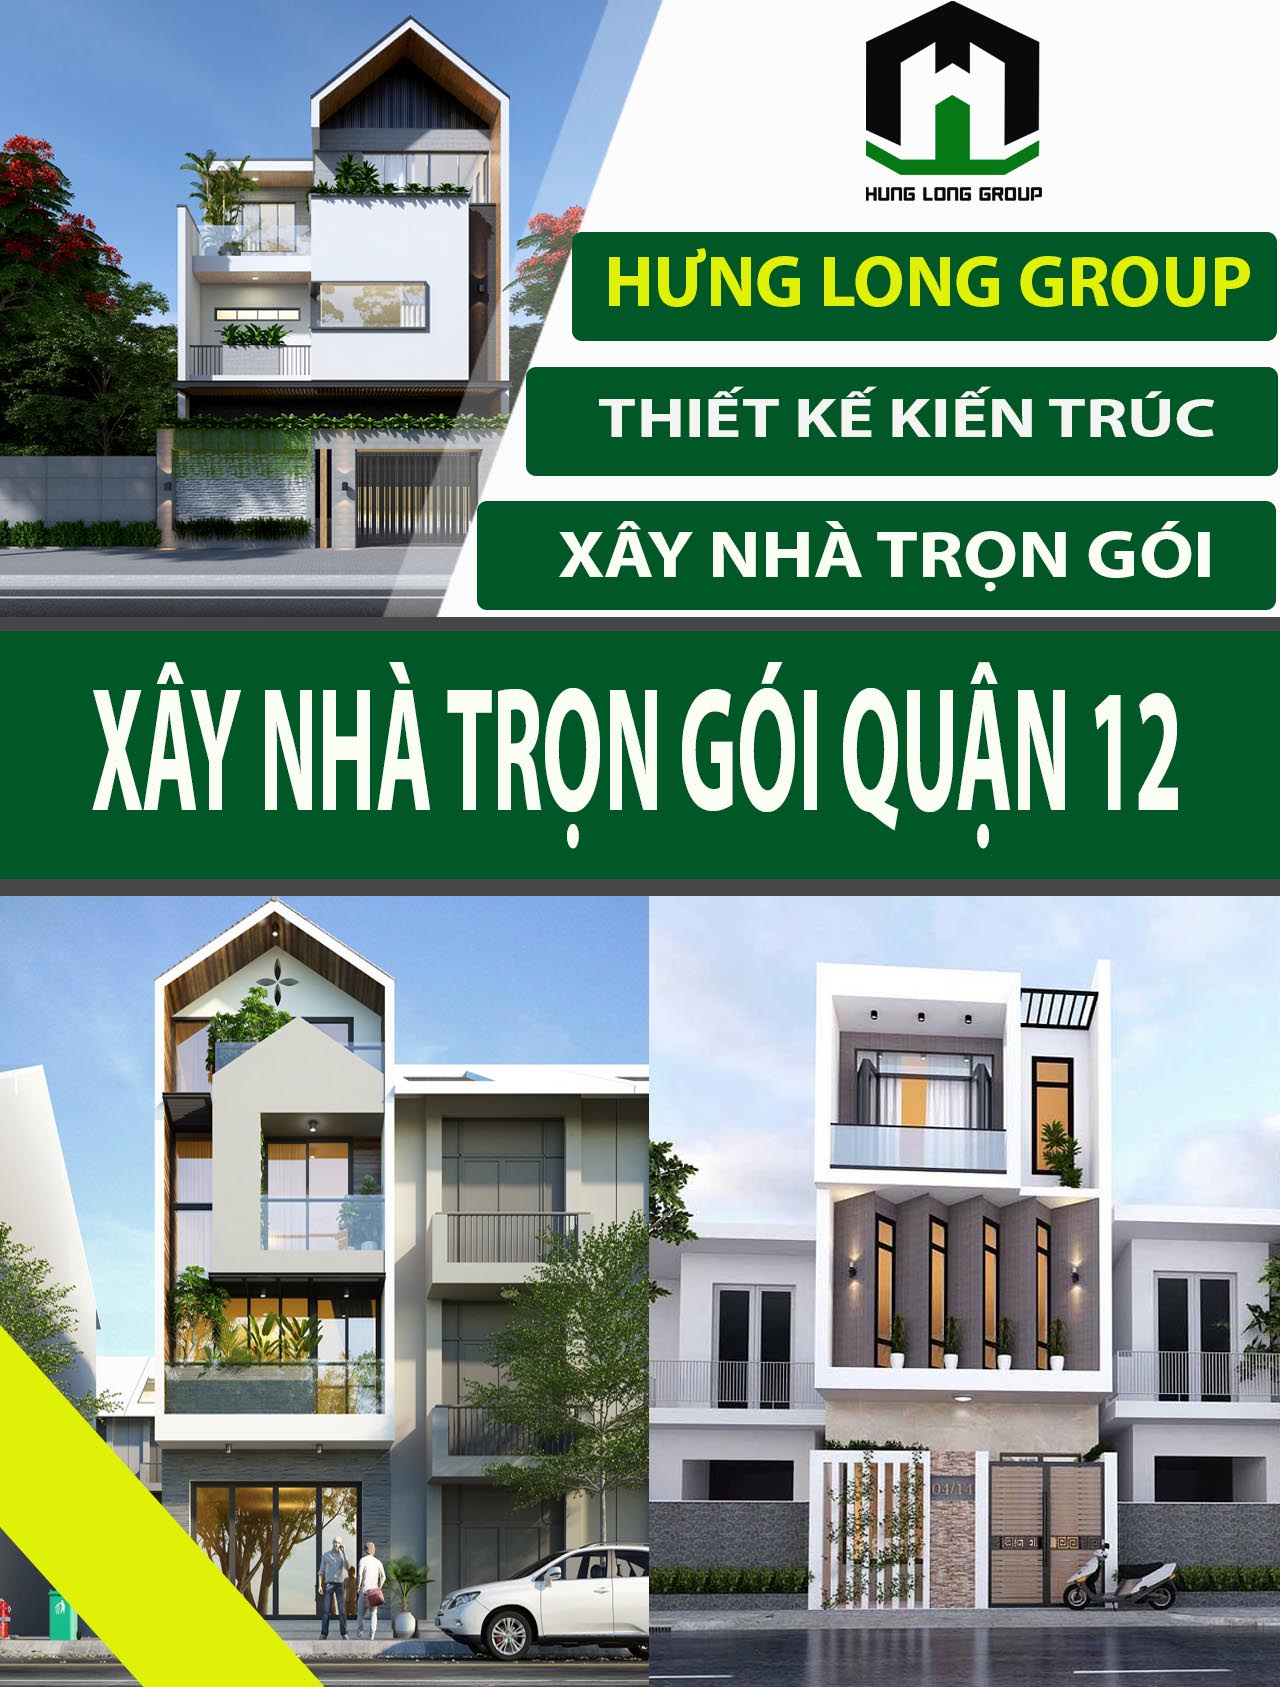 Xây nhà trọn gói quận 12 Uy Tín – Chất Lượng - Hưng Long